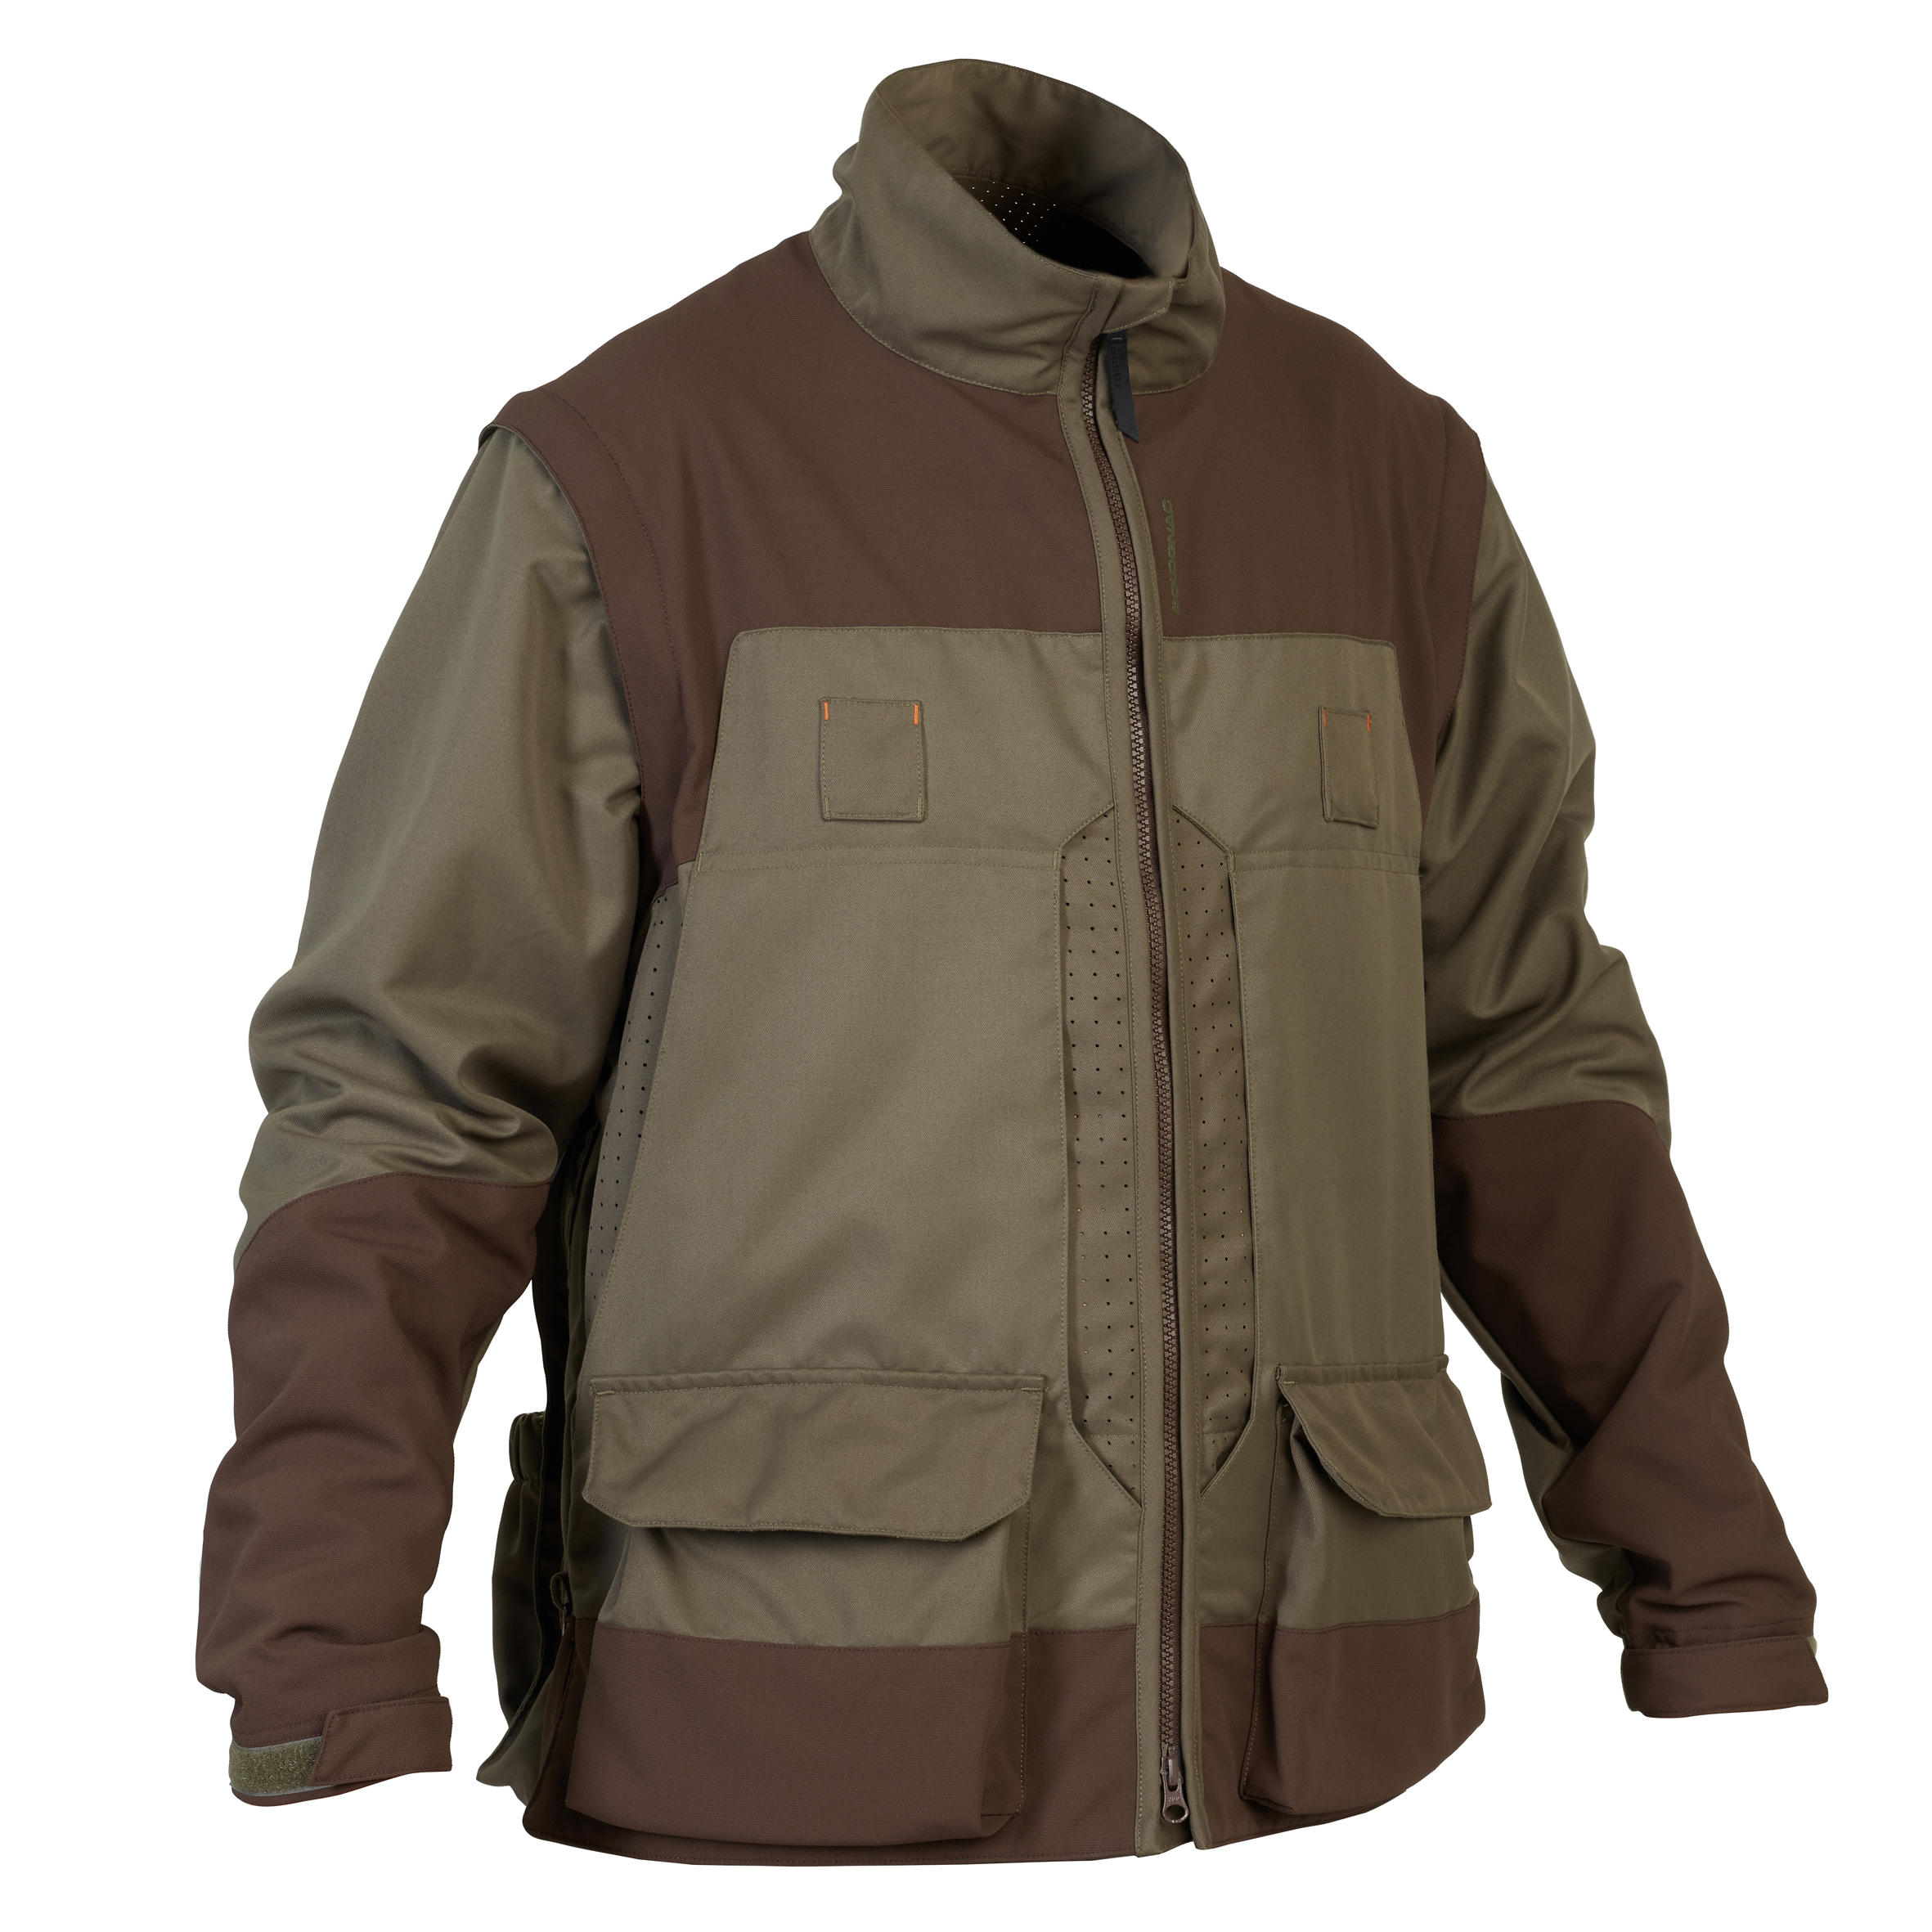 Jachetă SG 900 HYBRID respirantă cu mâneci detașabile verde și maro bărbați La Oferta Online decathlon imagine La Oferta Online